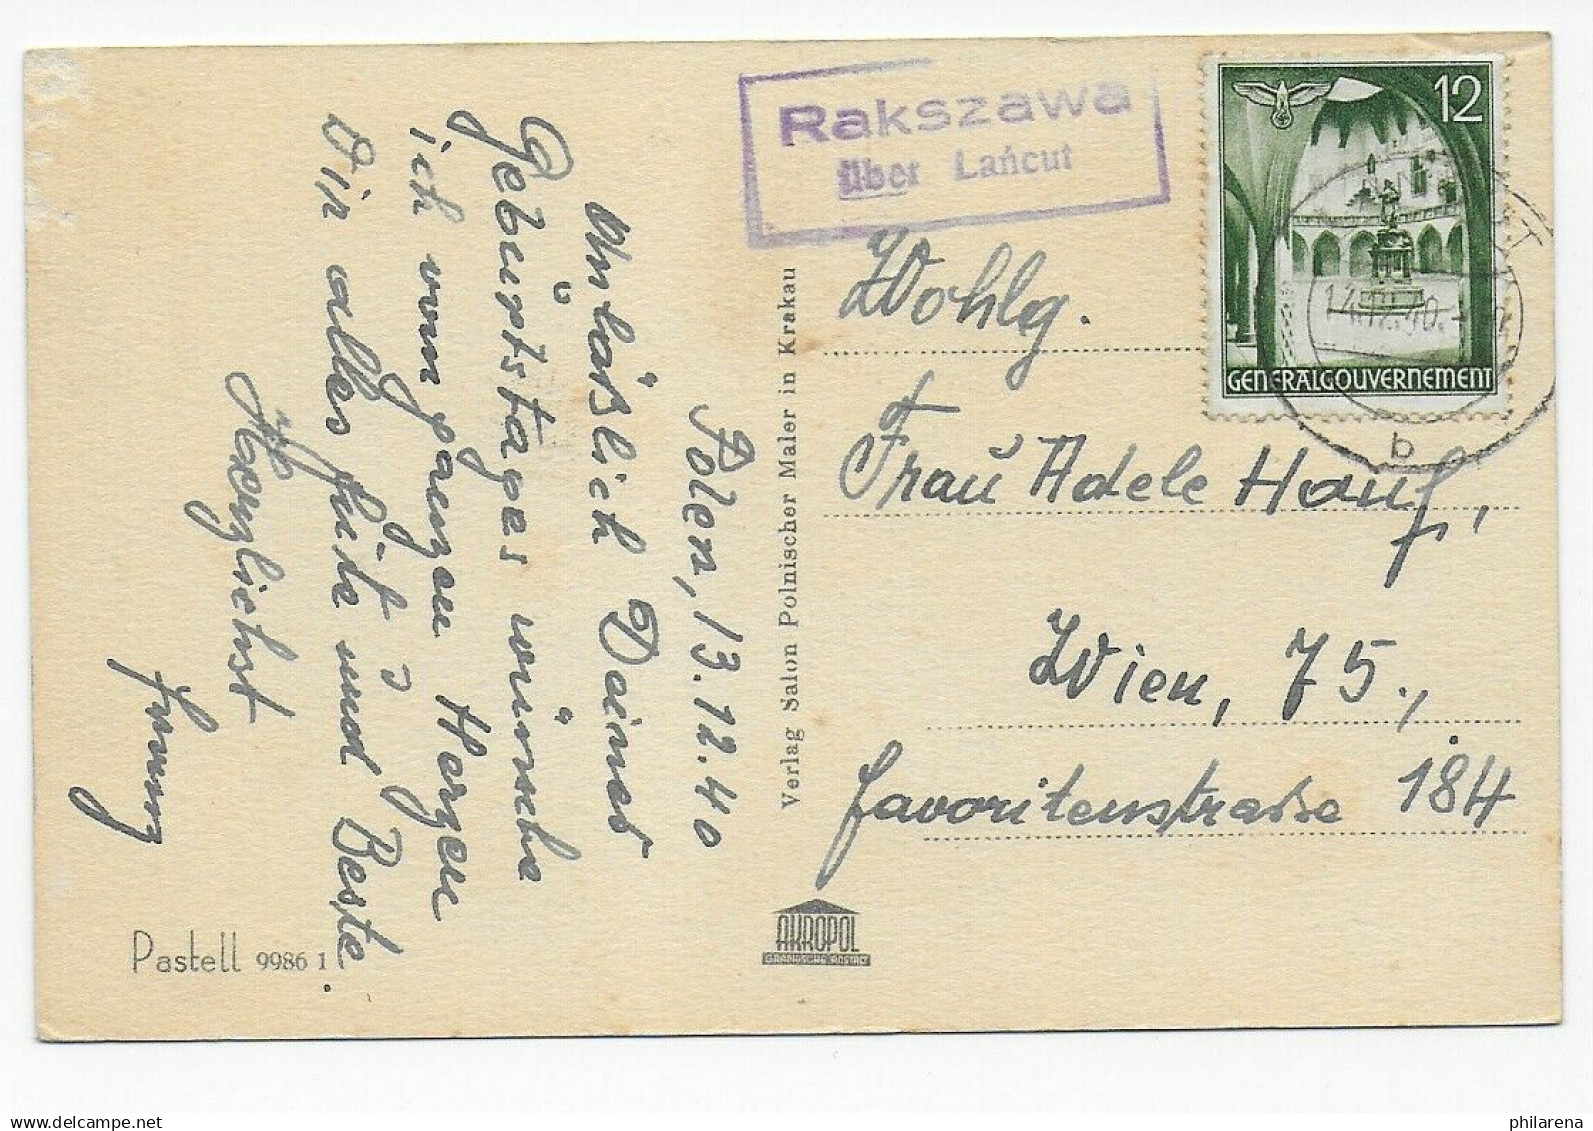 Geburtstagskarte Von Postagentur Rakszawa über Lancut Nach Wien, 1940 - Occupazione 1938 – 45